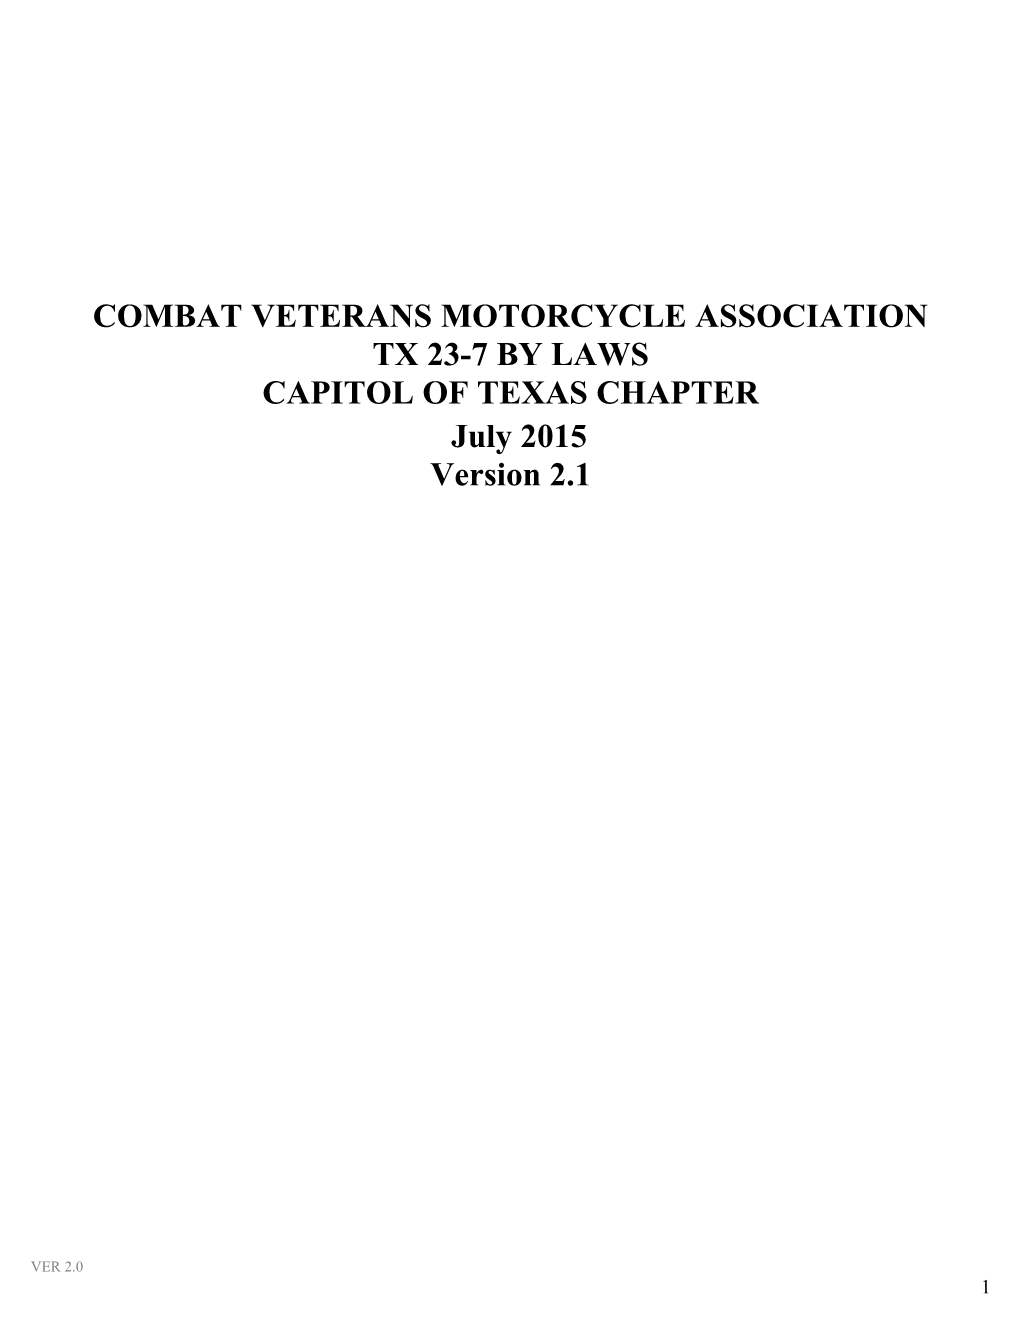 Combat Veterans Motorcycle Association s1